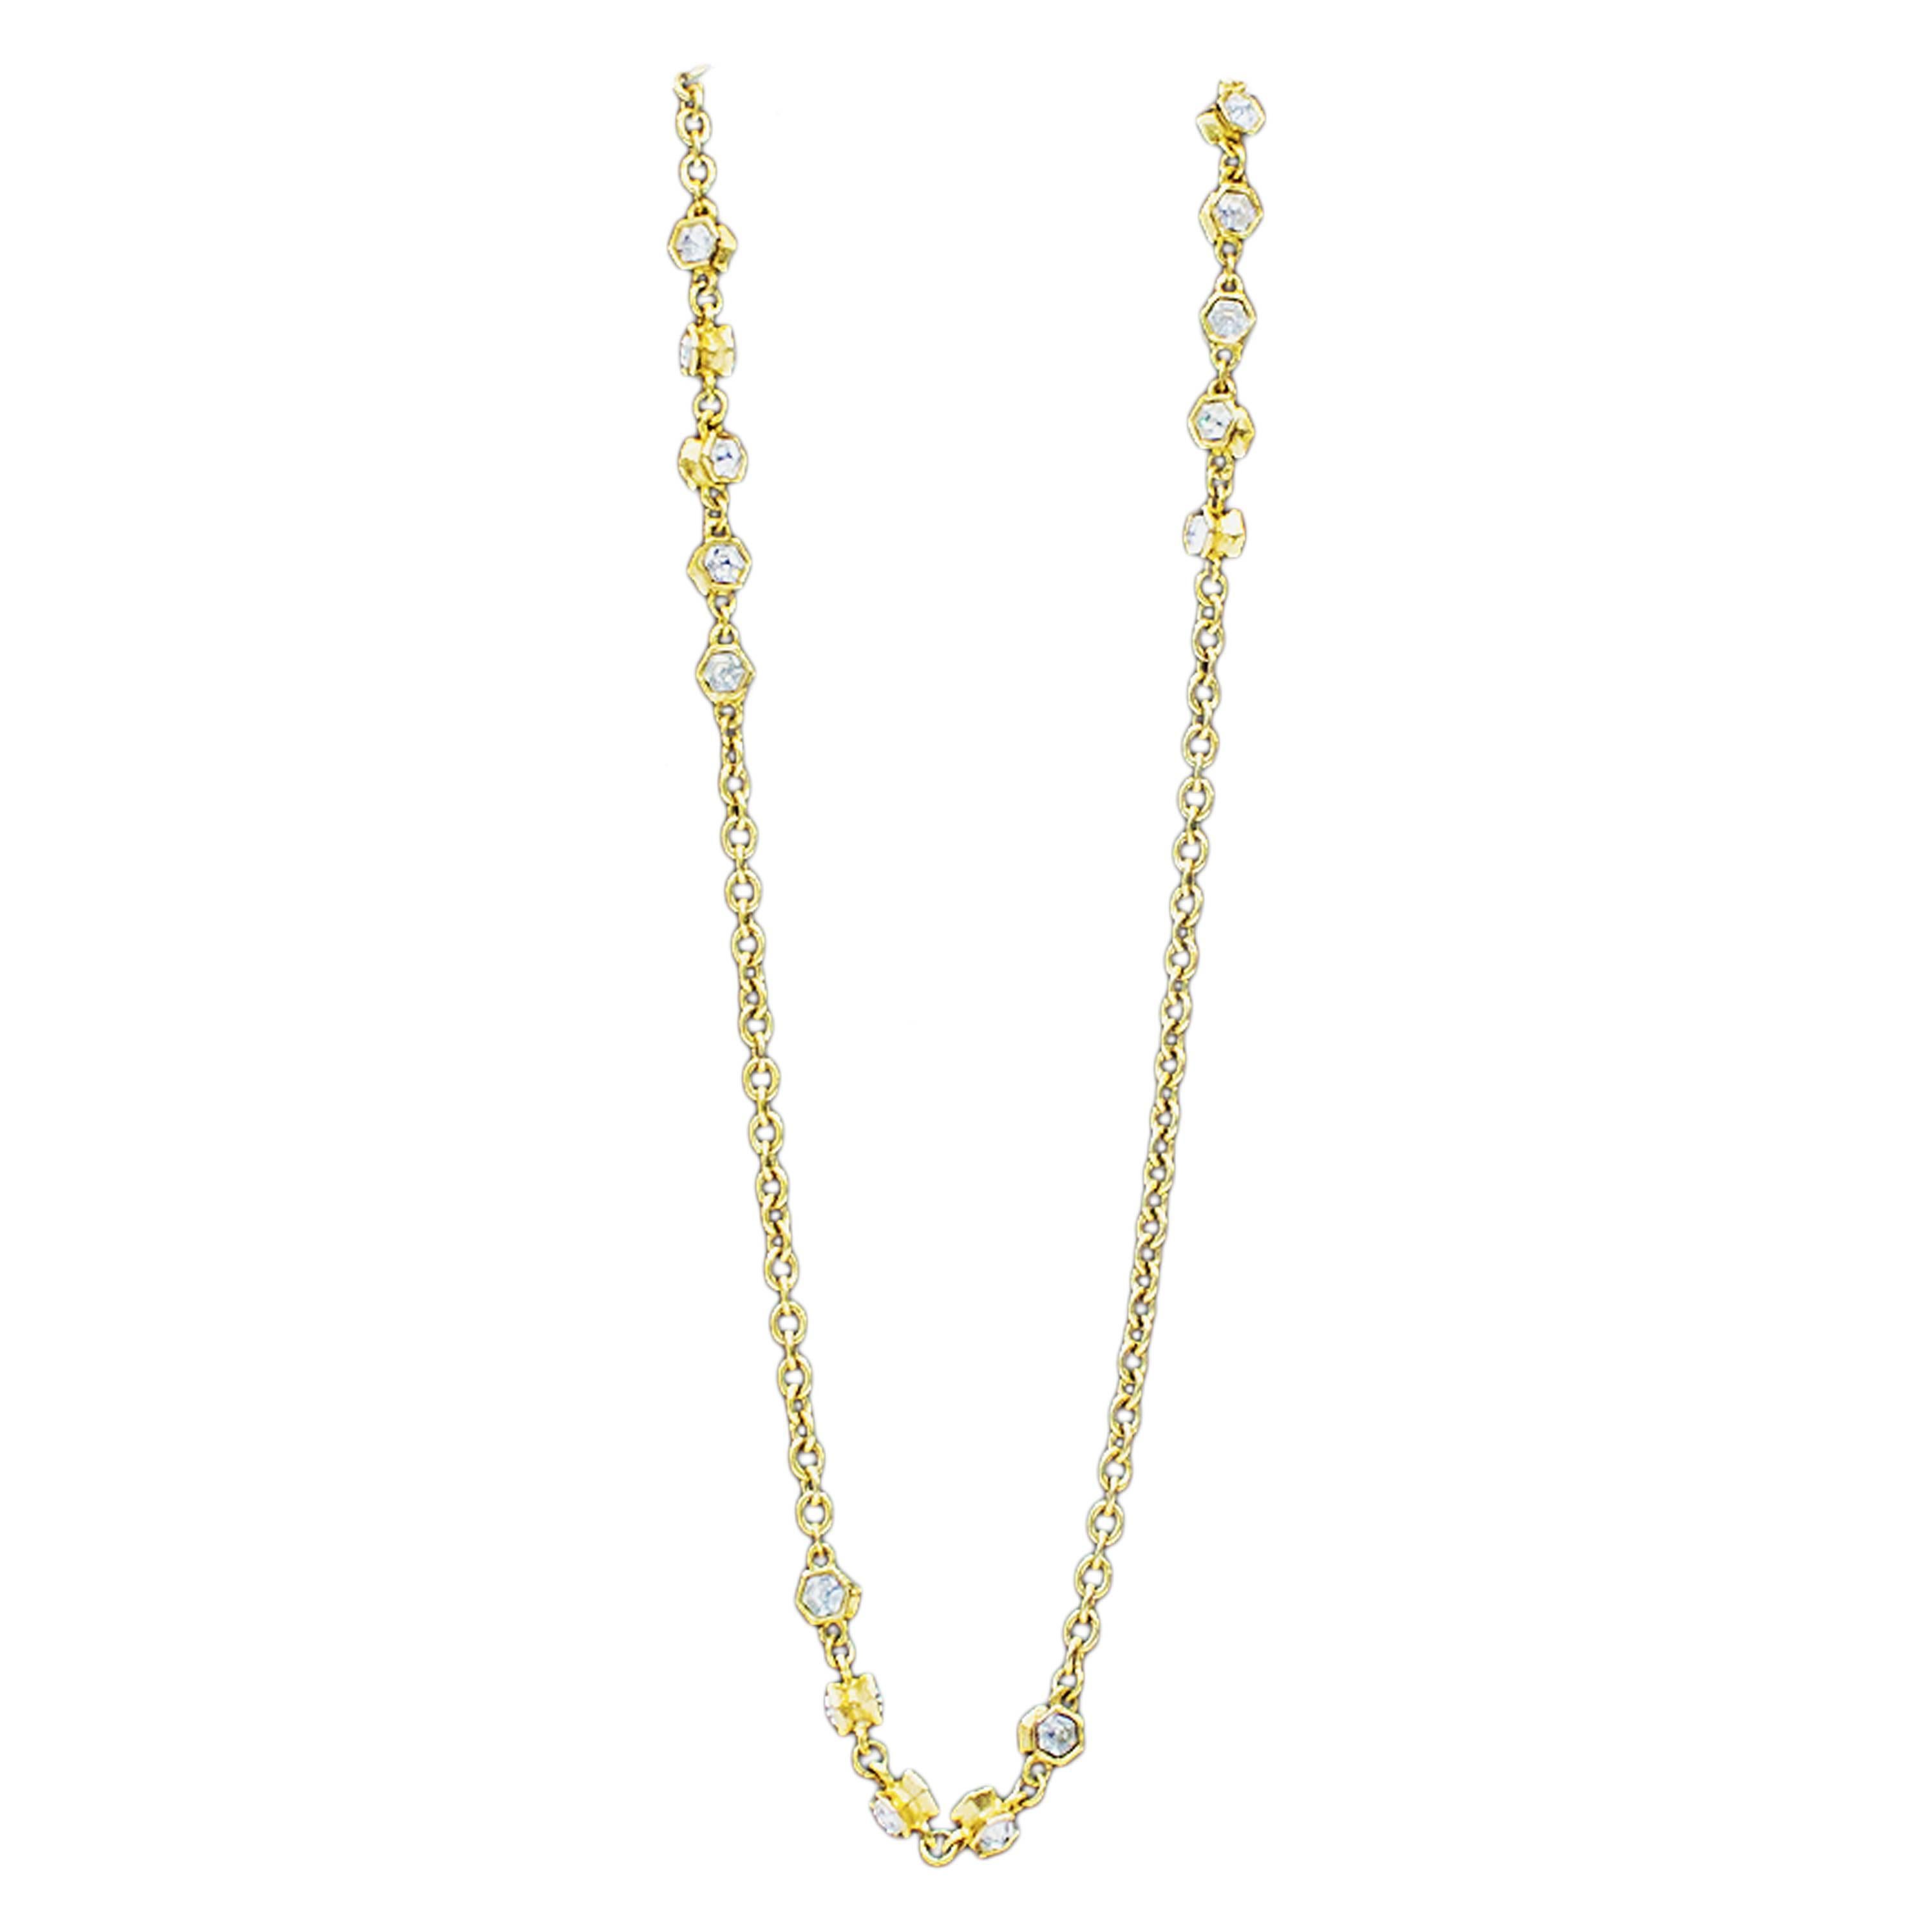 Chanel, collier sautoir chaîne en or avec strass, années 1970